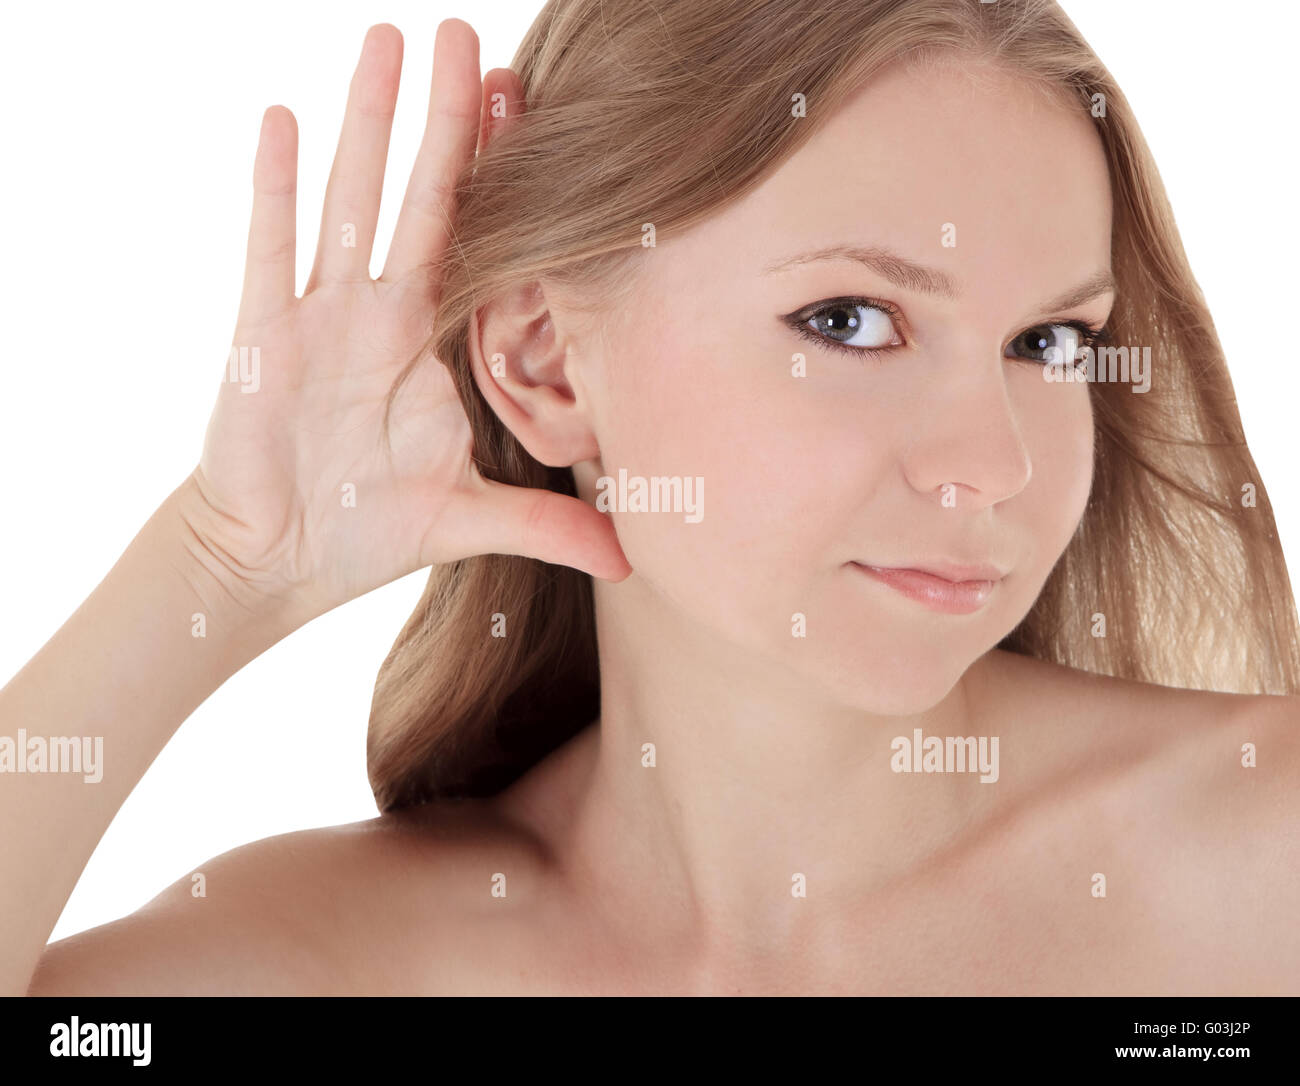 Image lumineuse de la jeune brunette listening gossip news Banque D'Images